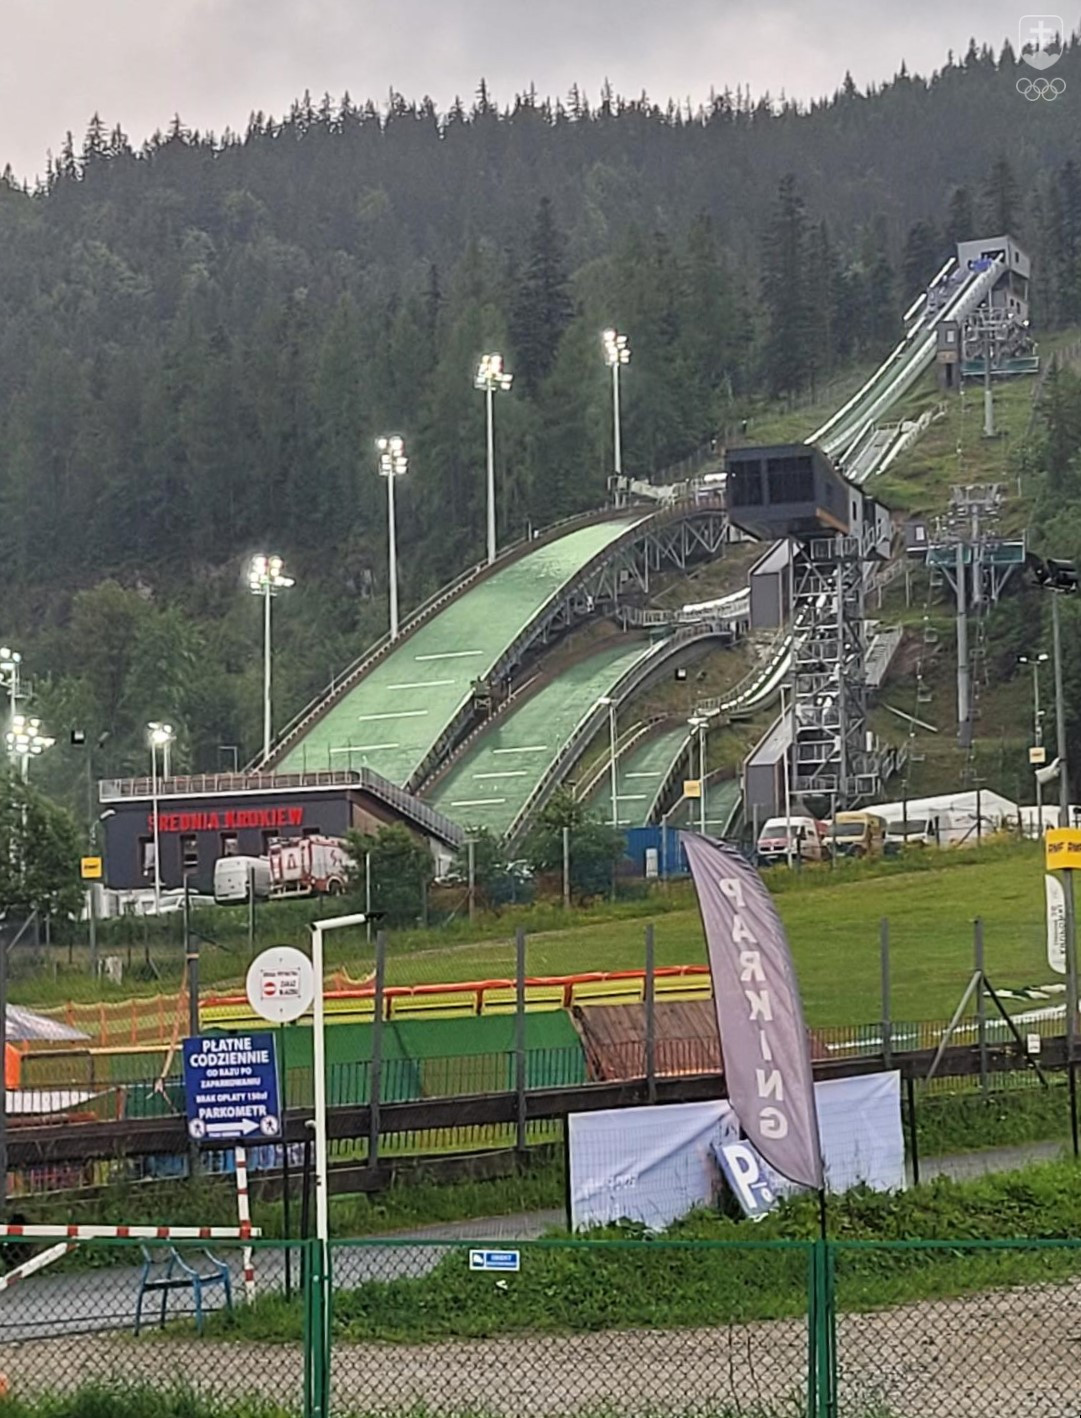 Parádny areál pre skoky na lyžiach v Zakopanom môžeme Poliakom len ticho závidieť, ale športovci z tohto odvetvia tam boli odrezaní od ostatného diania na Európskych hrách.